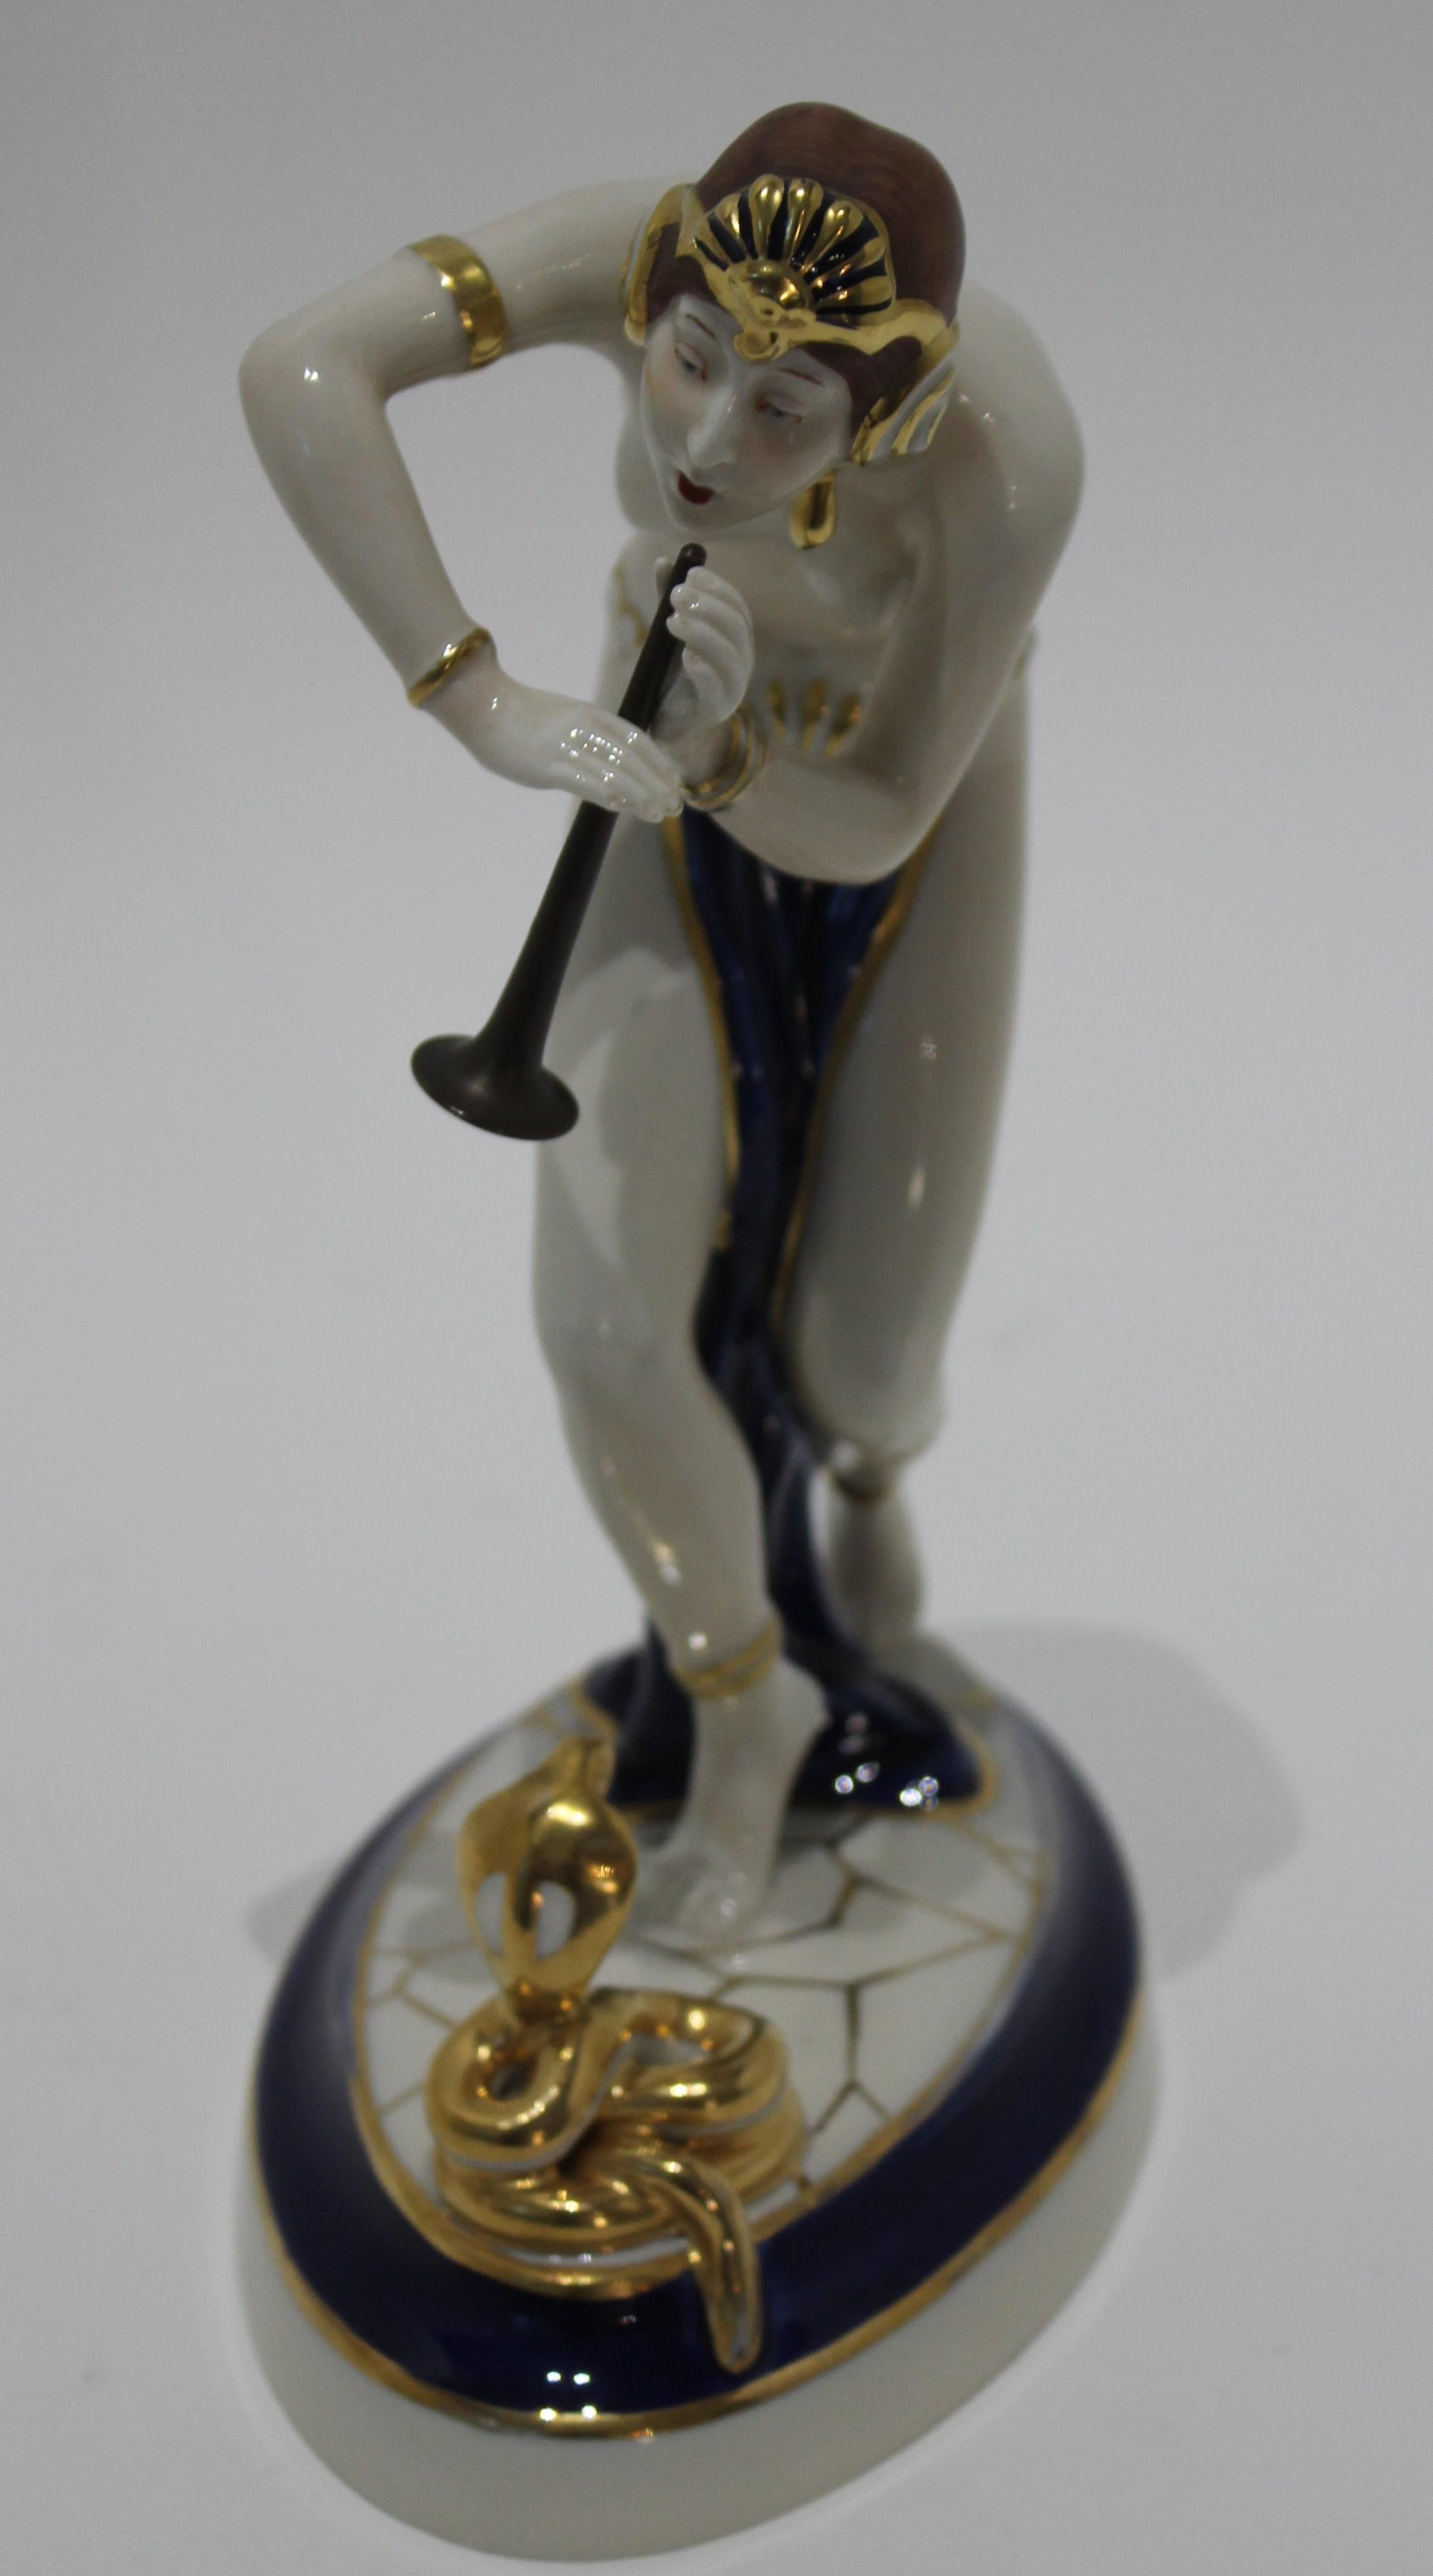 Figurine de charmeur de serpent en porcelaine Art déco 1920s-1930s avec corne de style ancien royal Cux signatures d'étiquettes tchèques

Figurine de charmeur de serpent Art déco des années 1920-30 avec des signatures d'étiquettes tchèques Royal